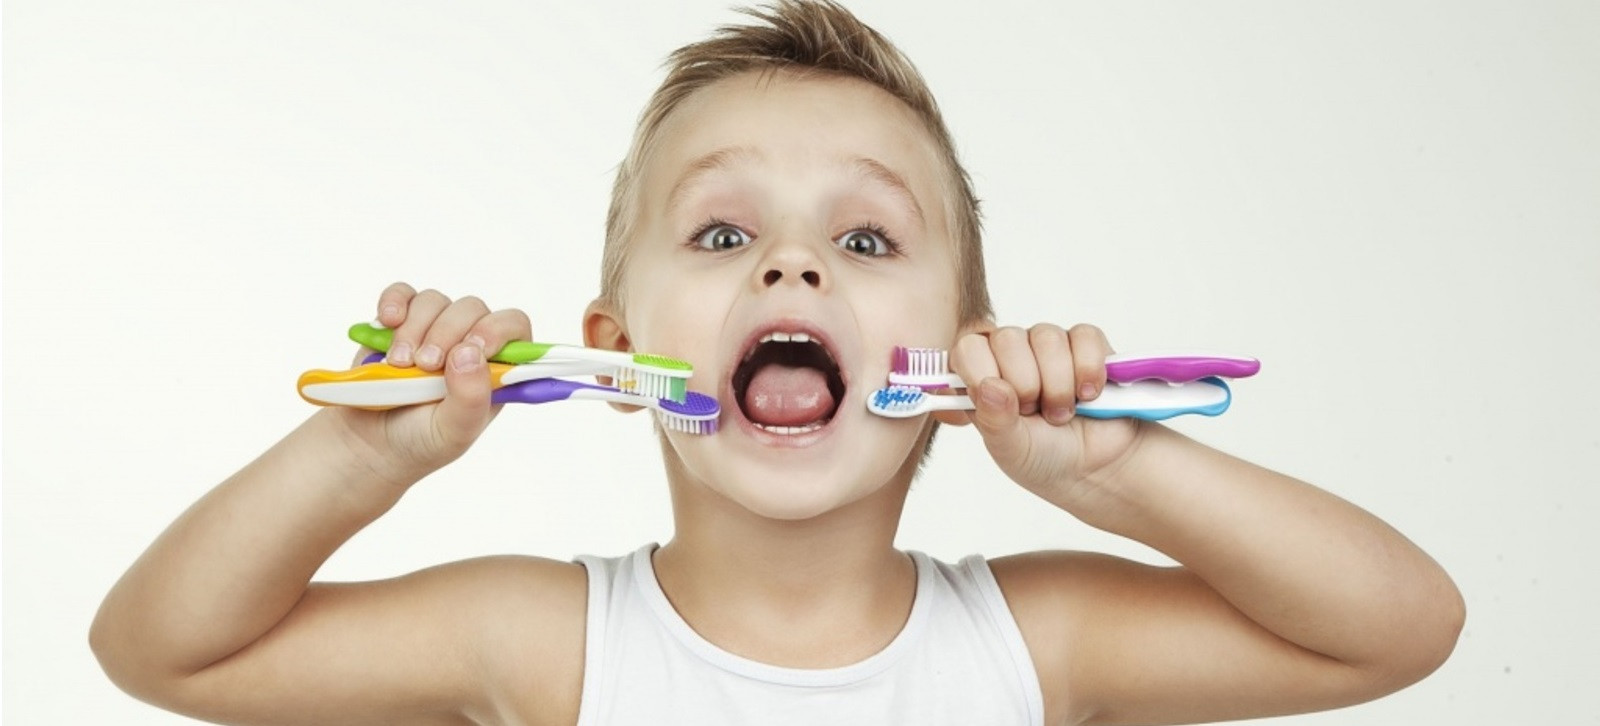 Топ-5 зубных щеток для малышей на сайте Айхерб